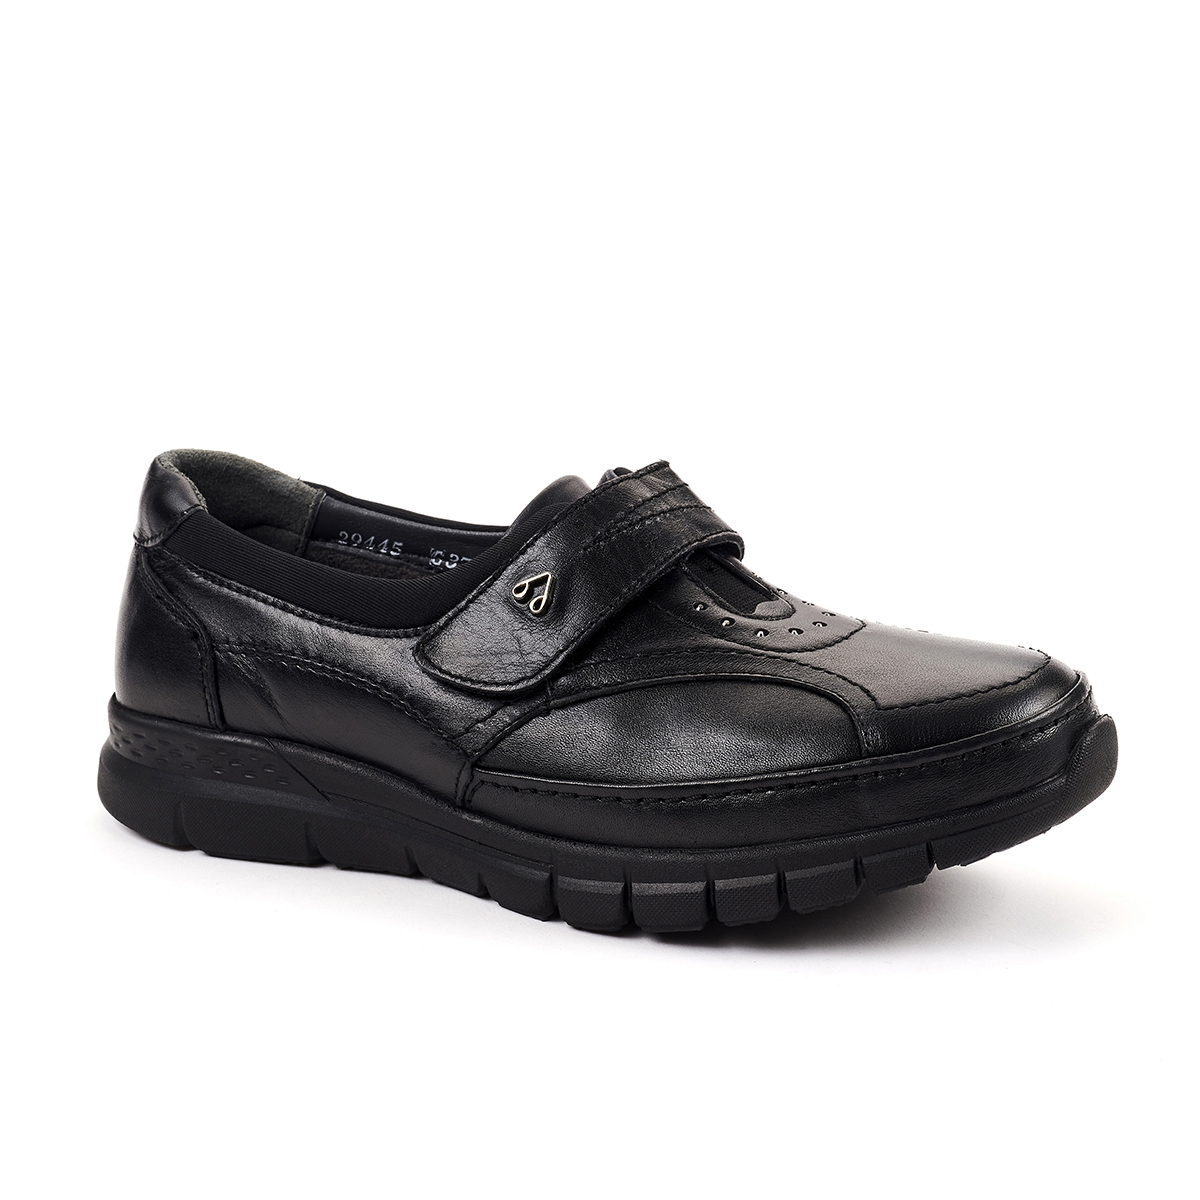 Forelli - Forelli IRIS-G Comfort Kadın Ayakkabı Siyah